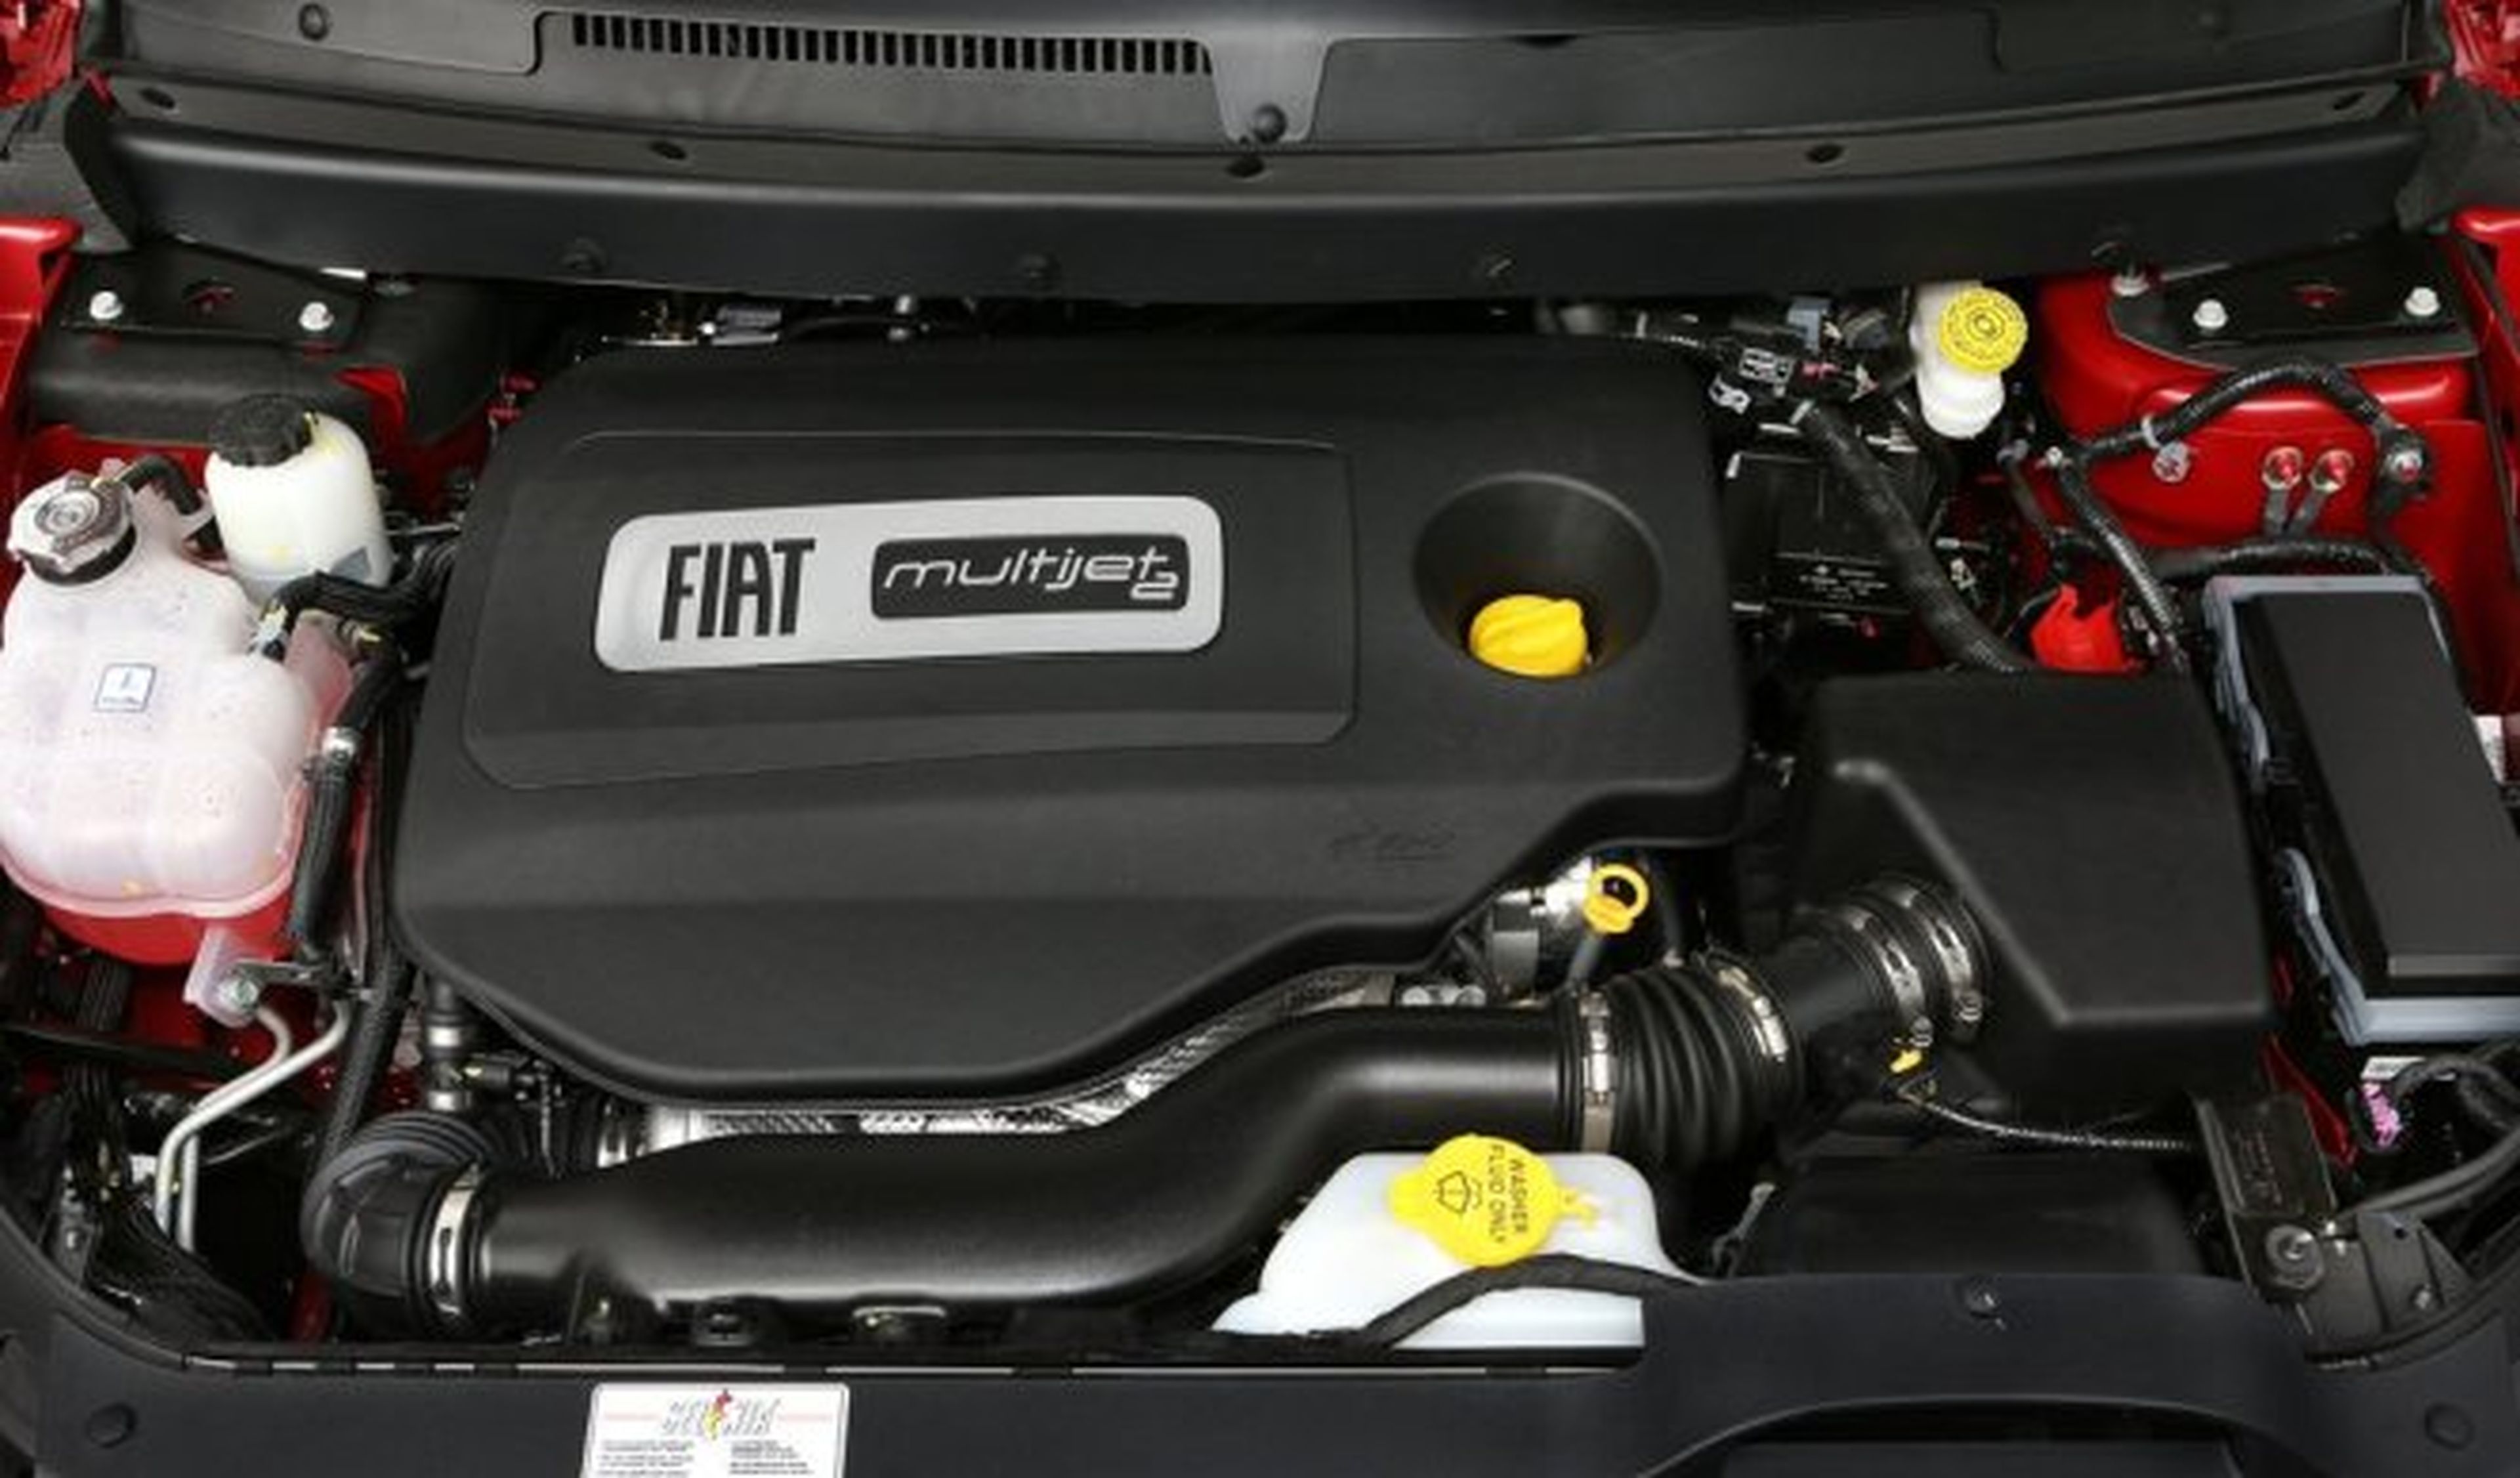 Fiat Chrysler Automóviles no miente en sus emisiones